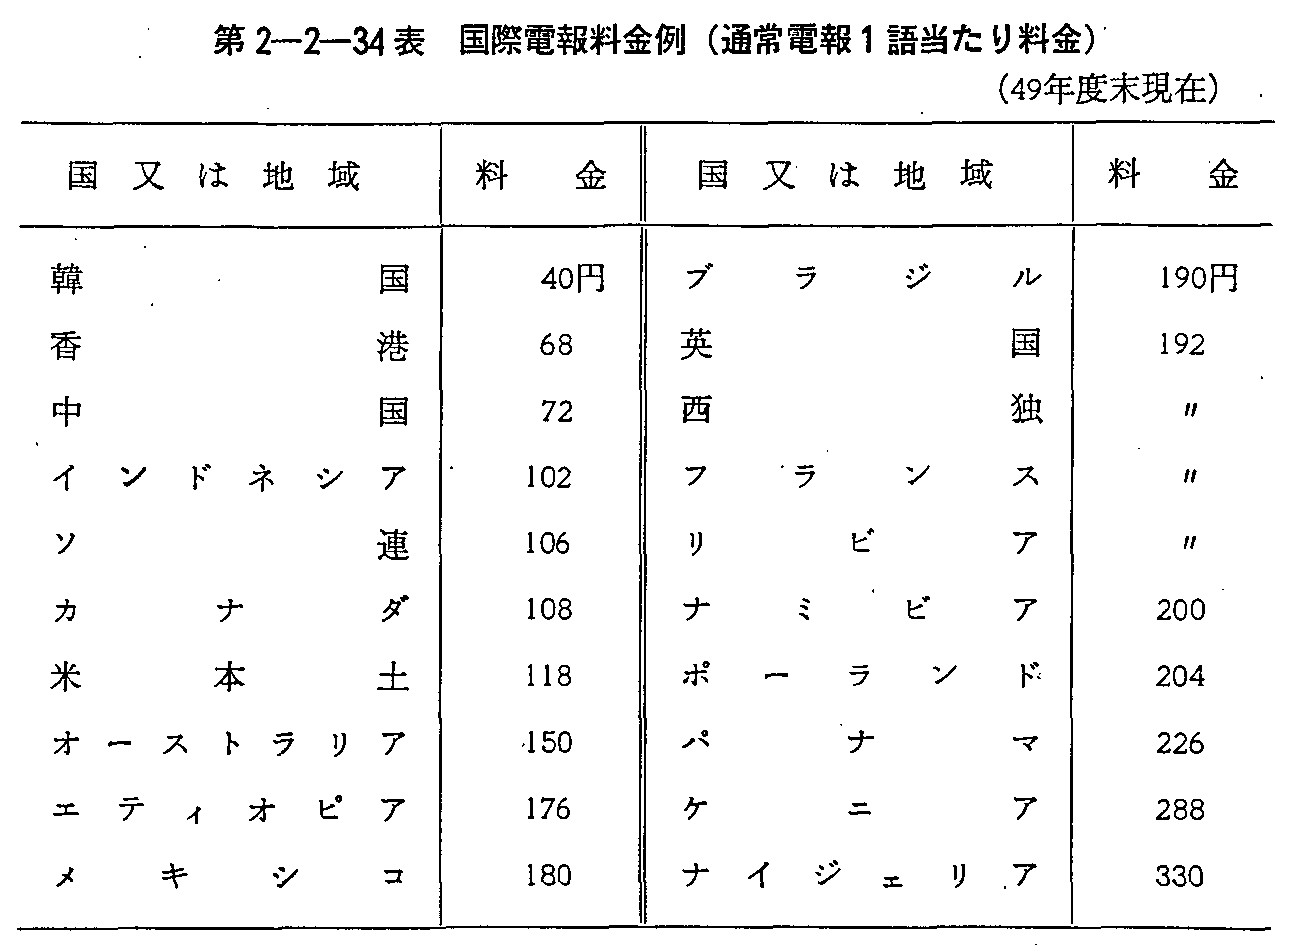 2-2-34\ ۓd񗿋(ʏd1ꓖ藿)(49Nx)